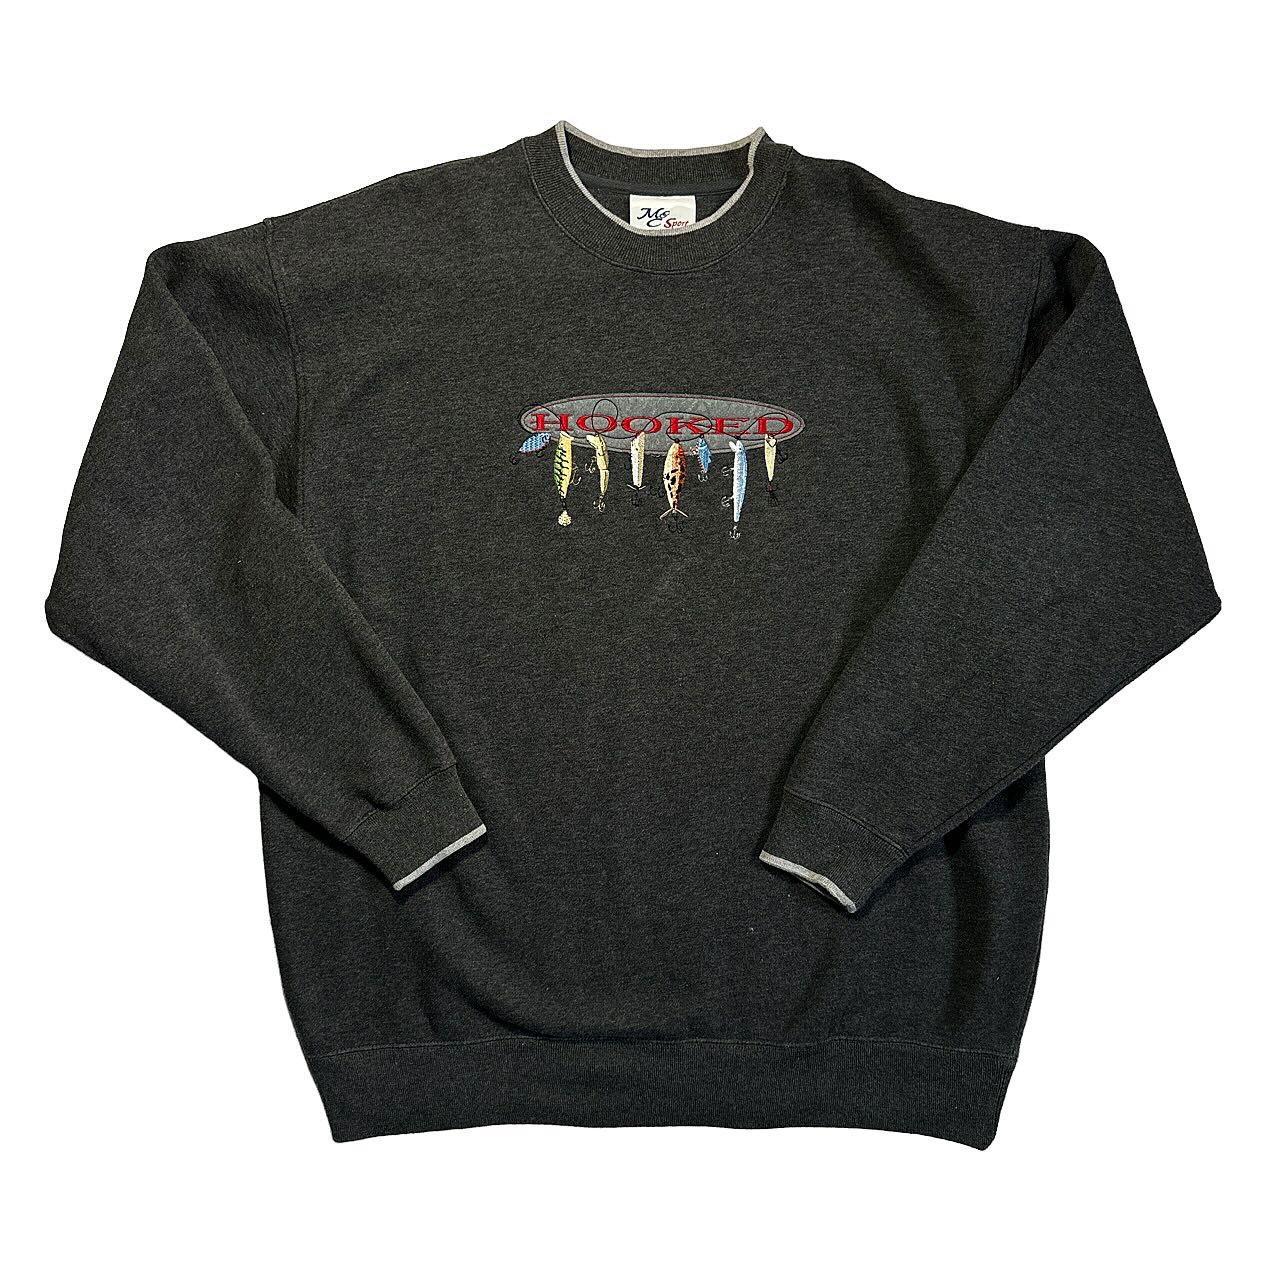 MC Sport Hooked Fishing Sweatshirt -Size XL -9.5/10 - Depop